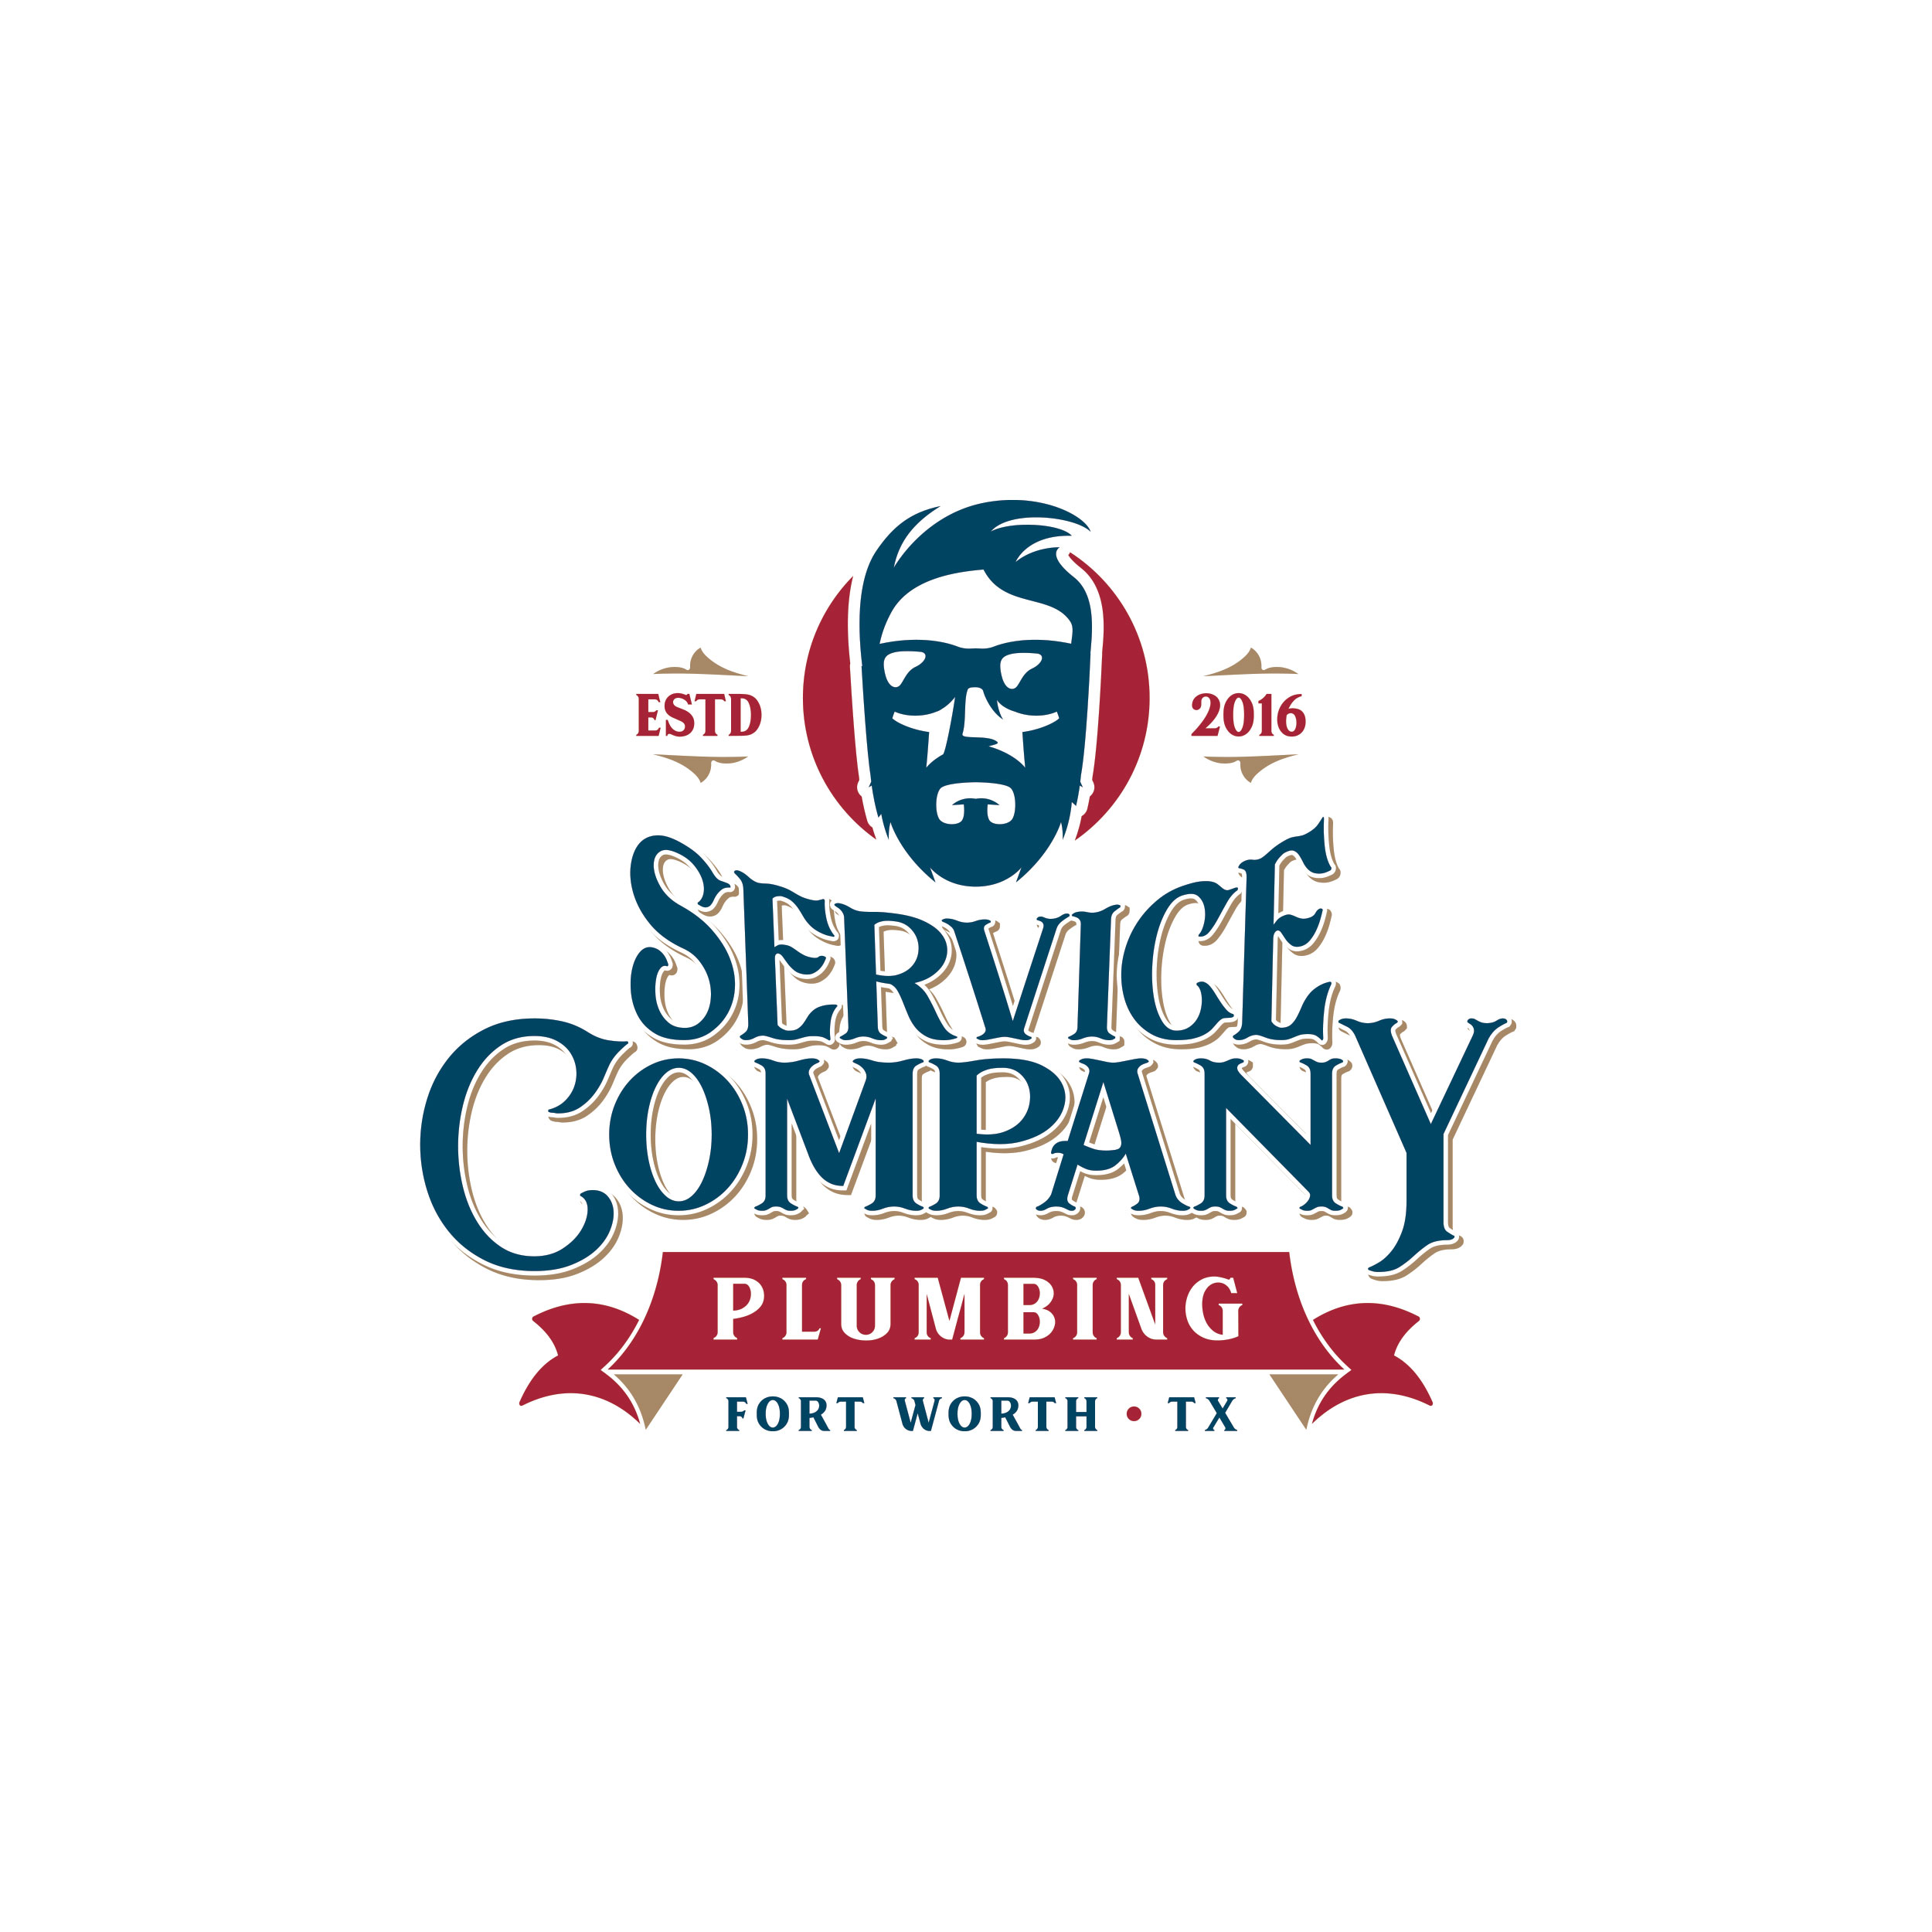 OldWestCreative_Work_Logos_ServiceCompanyPlumbing